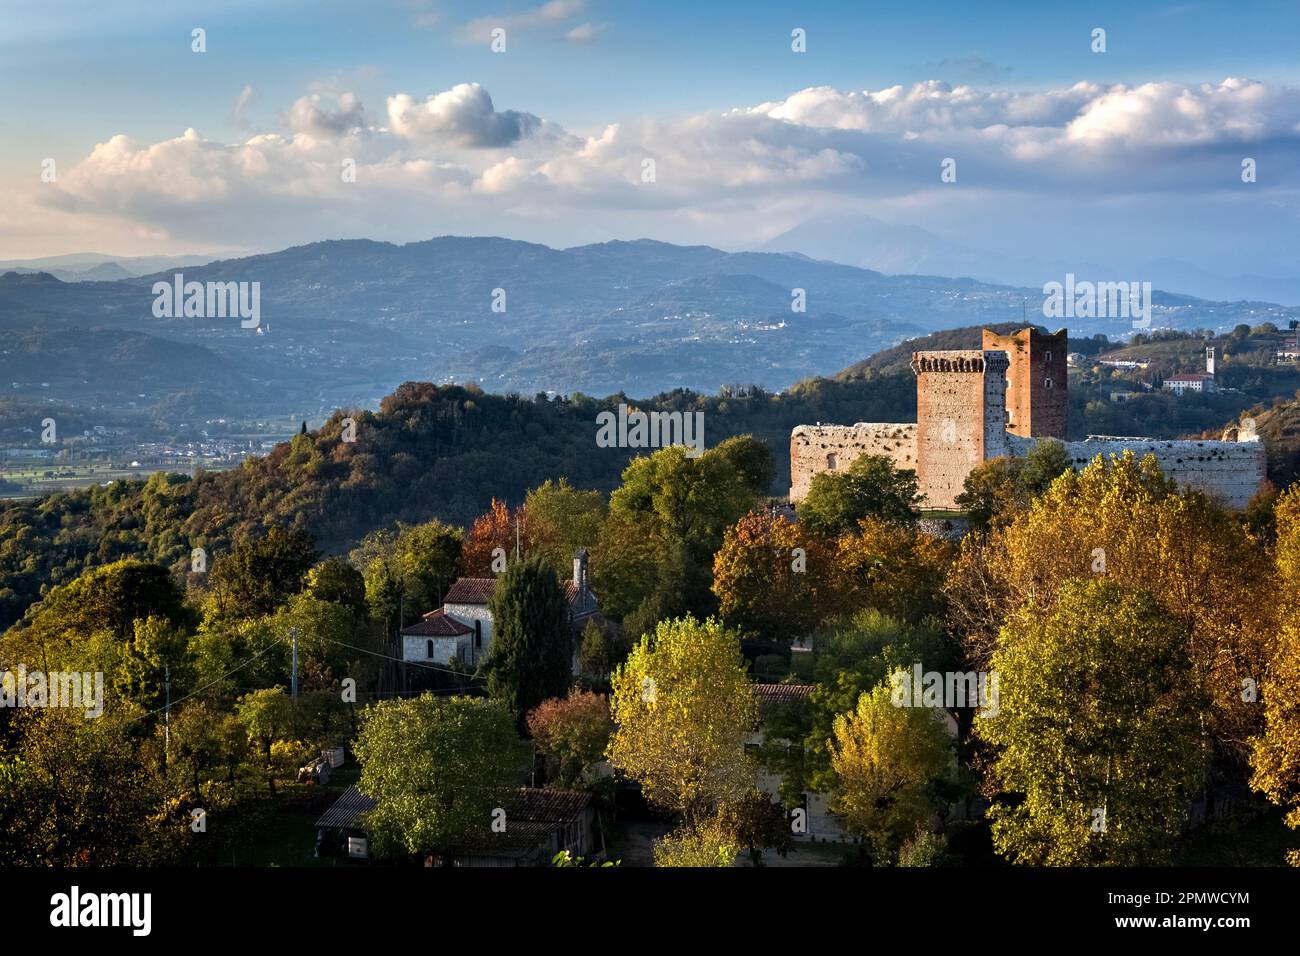 The castle of the Villa is known as the castle of Romeo. Montecchio Maggiore, Veneto, Italy. Stock Photo